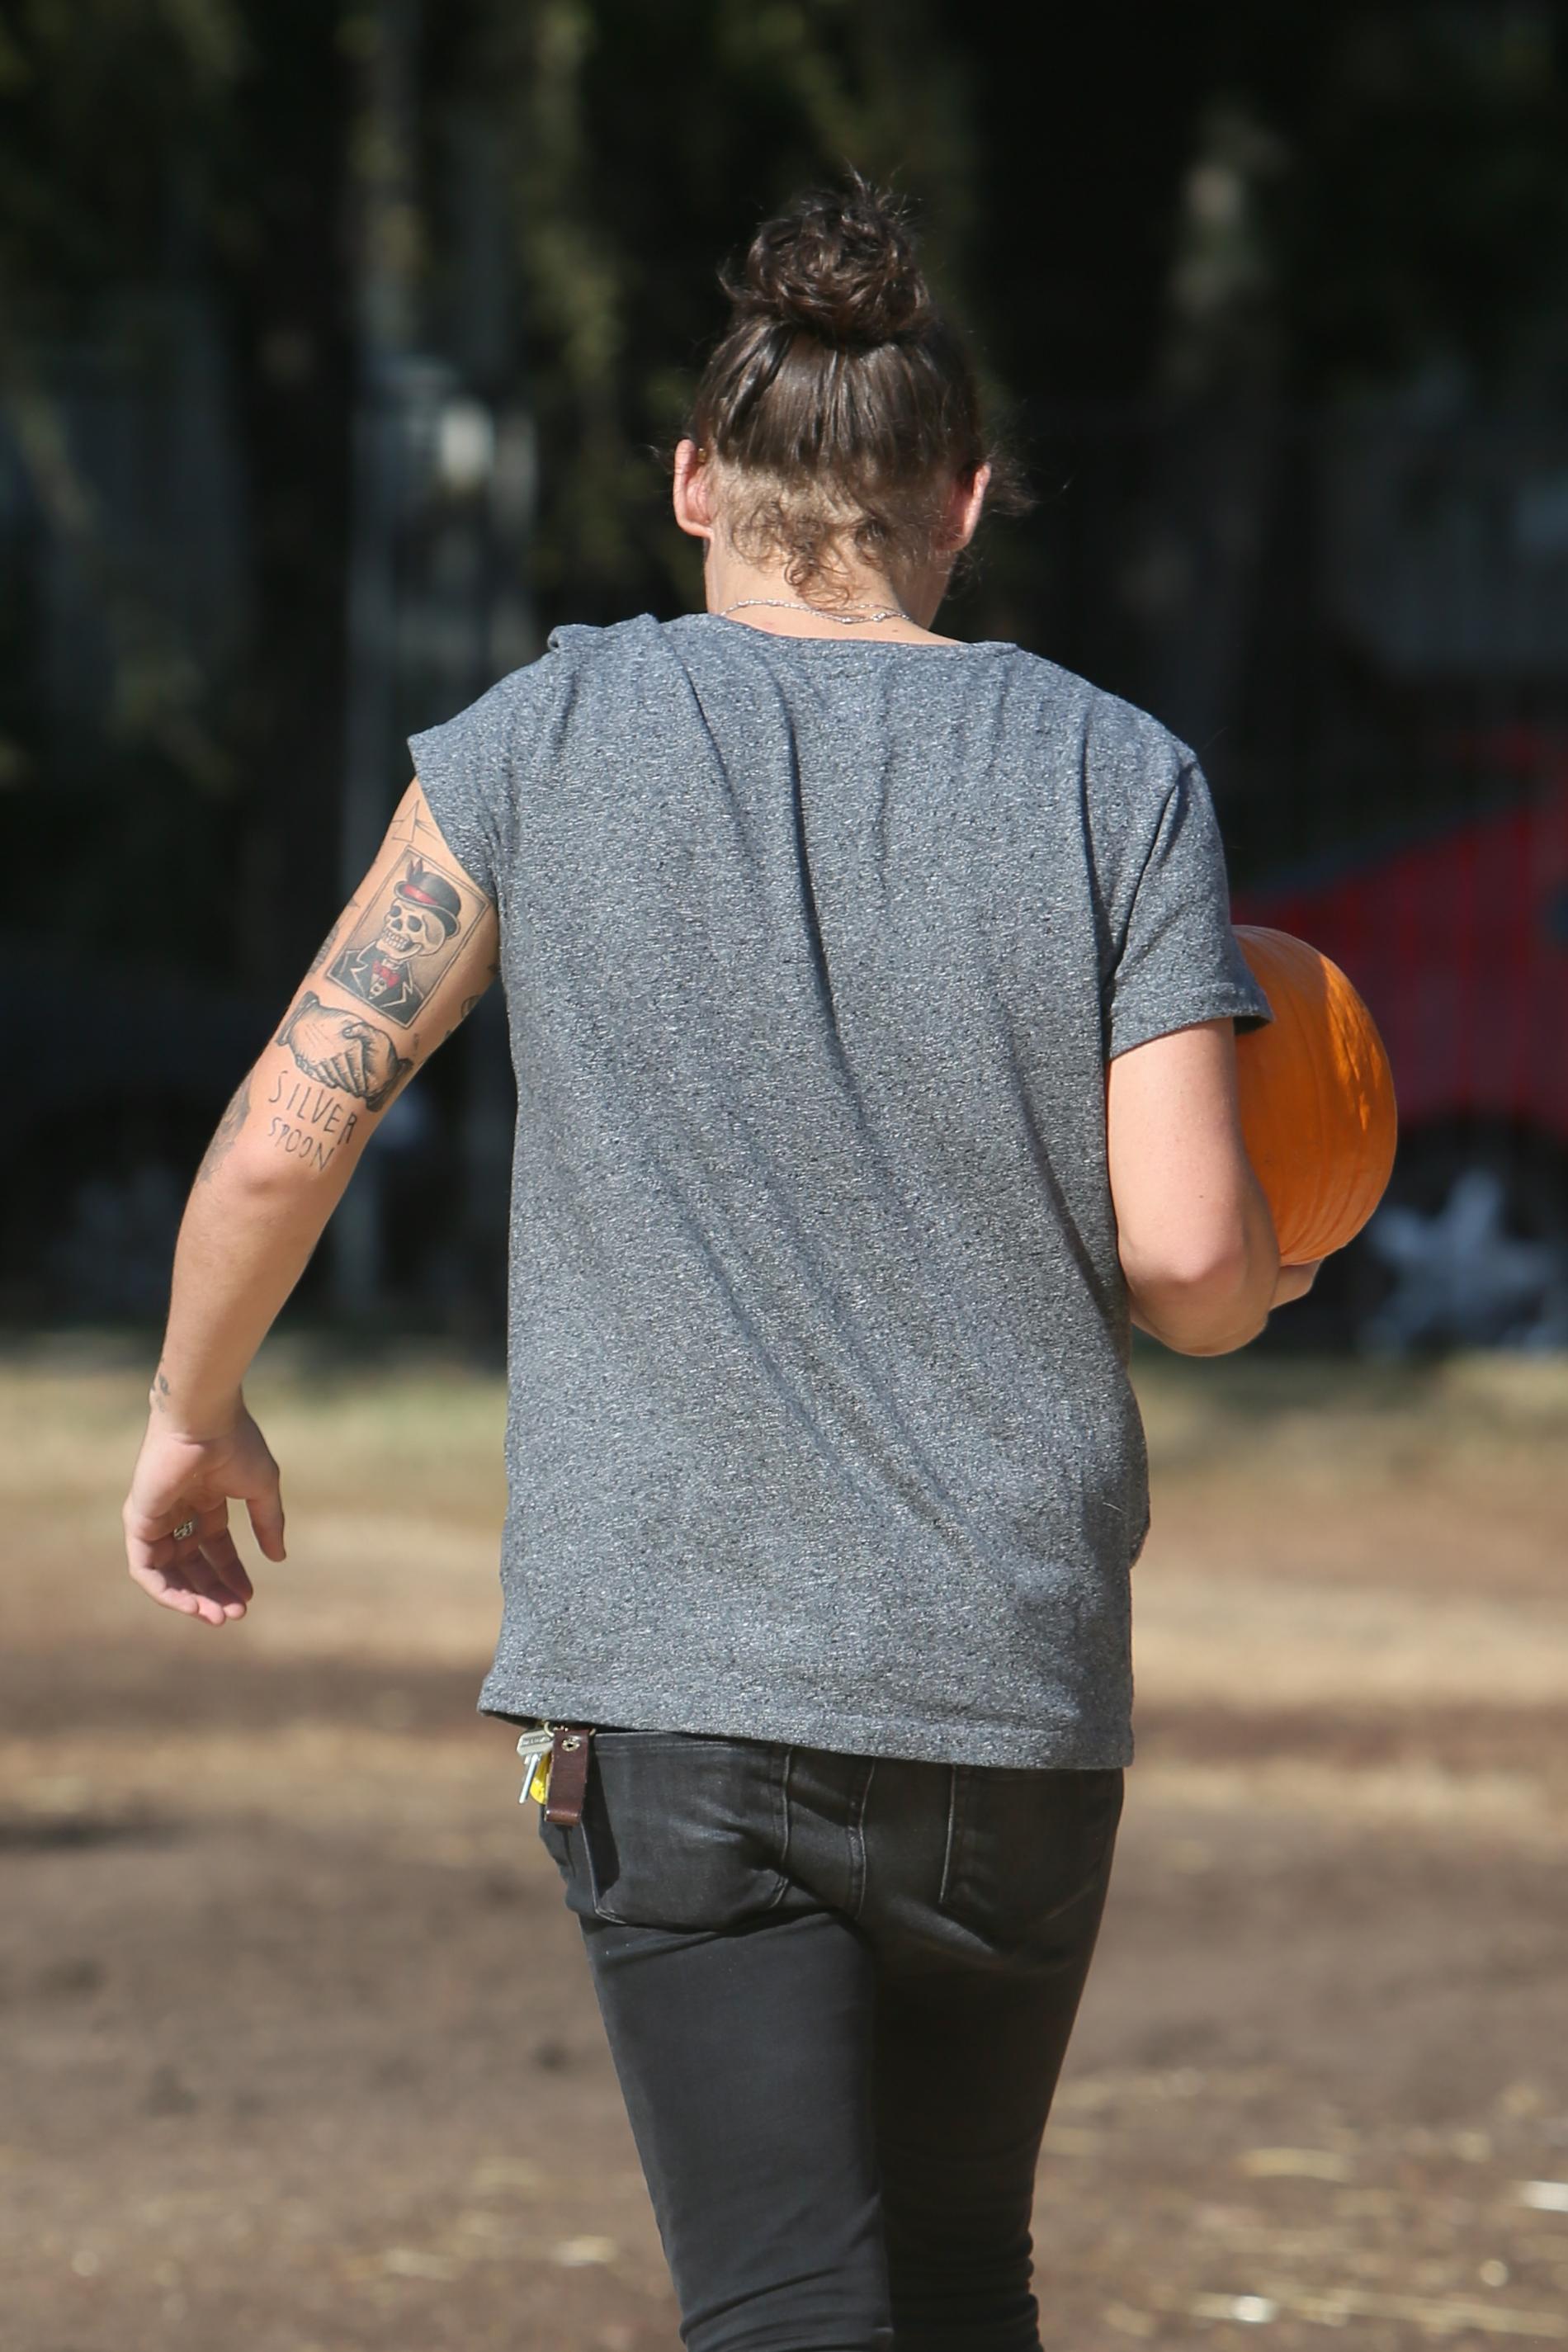 FOKUS: Harry Styles hårbulle Harry rapporteras under hösten 2014 ha nått ”peak man bun”.